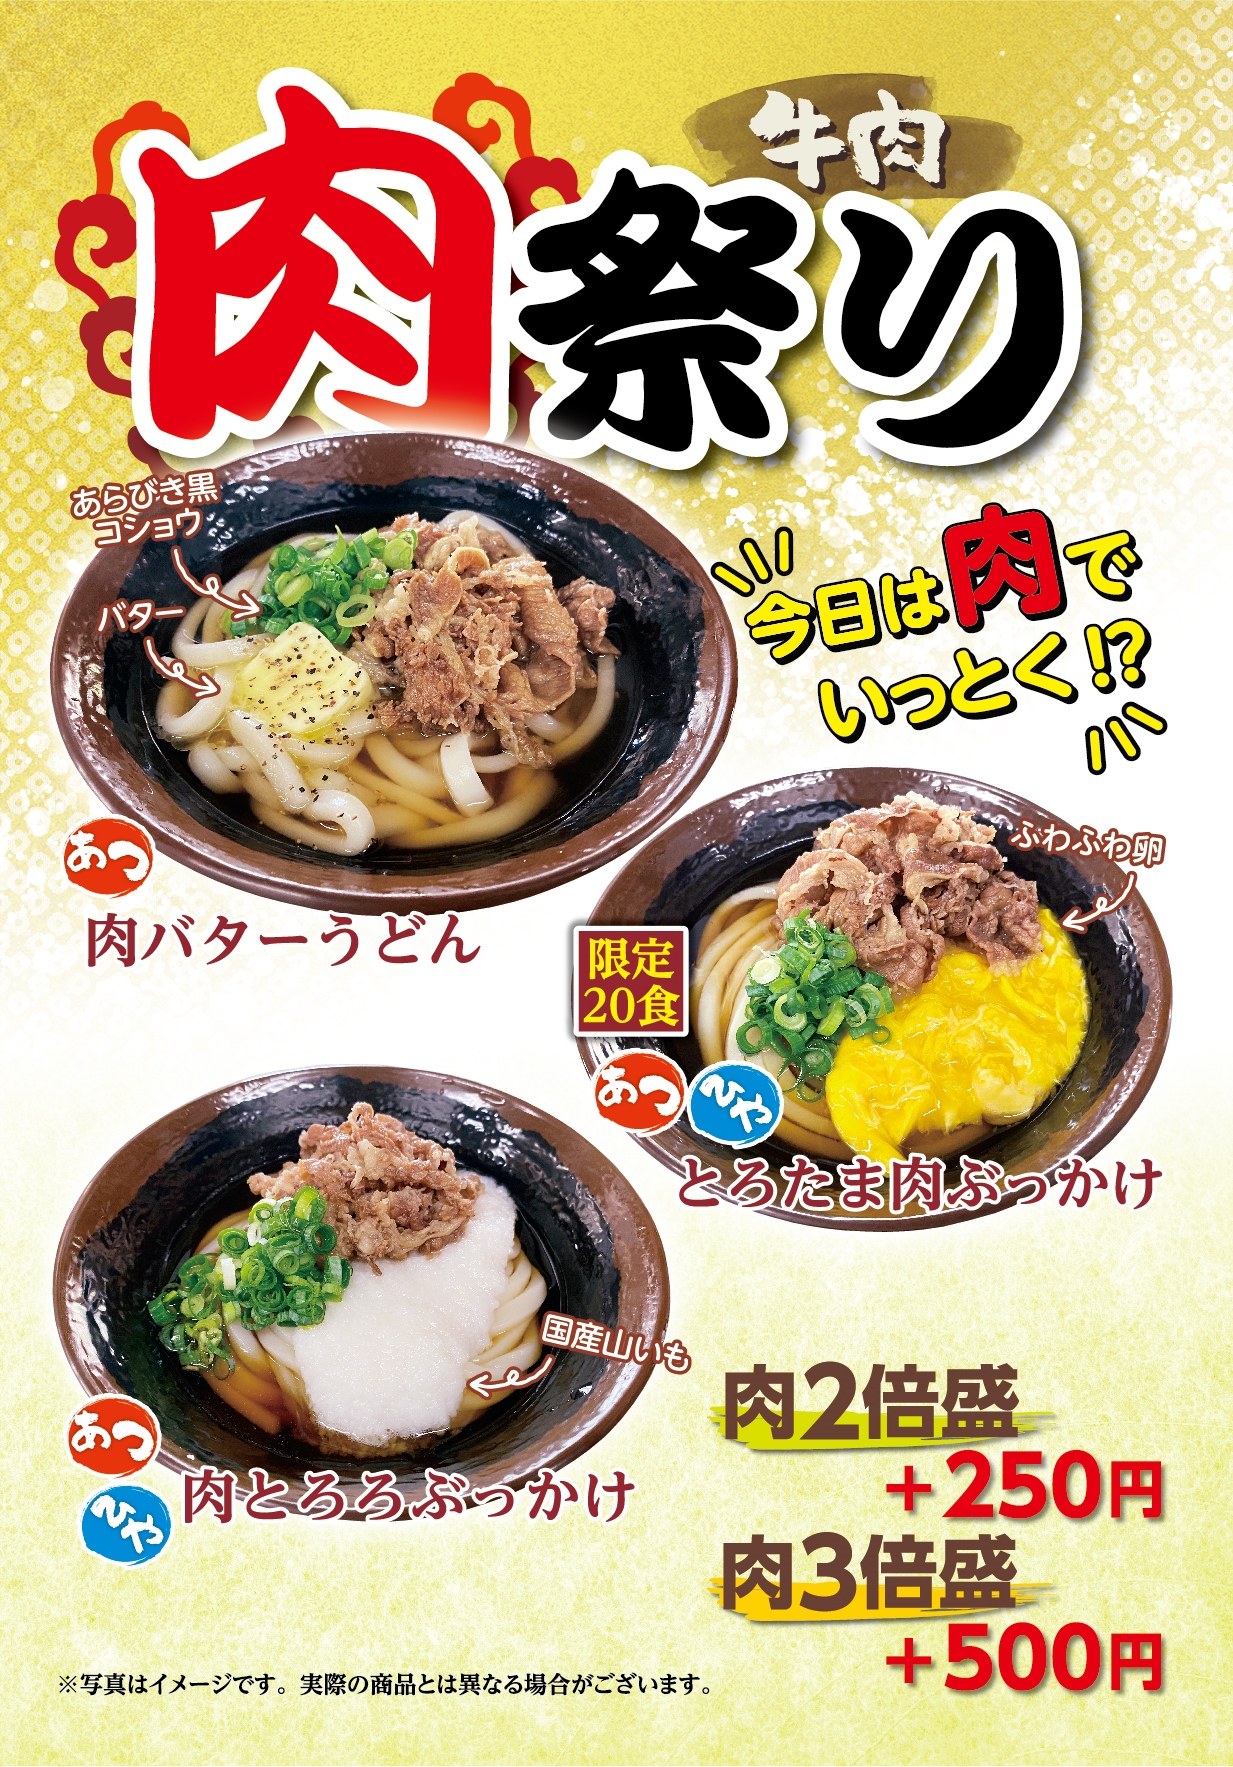 めりけんや肉祭りA1_POPA高松駅前店かけはし店様_220913out.jpg